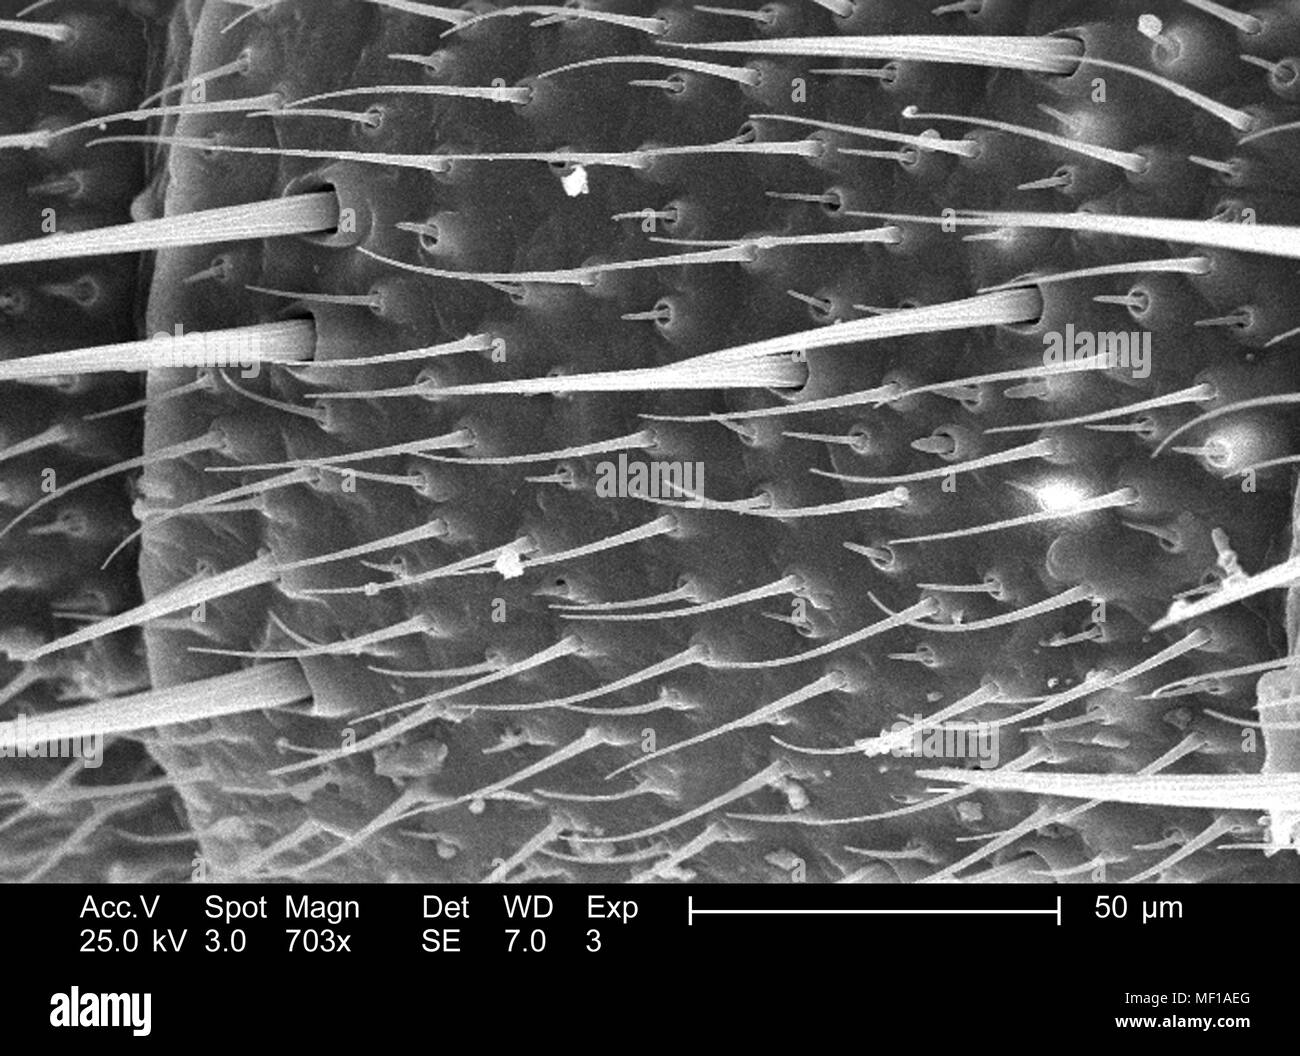 Dettagli ultrastrutturali e i peli sensoriali (Setae) di una antenna a forma di libellula, raffigurato nella 703x di scansione ingrandita al microscopio elettronico (SEM) immagine, 2005. Immagine cortesia di centri per il controllo delle malattie (CDC) / Janice Haney Carr, Connie fiori. () Foto Stock